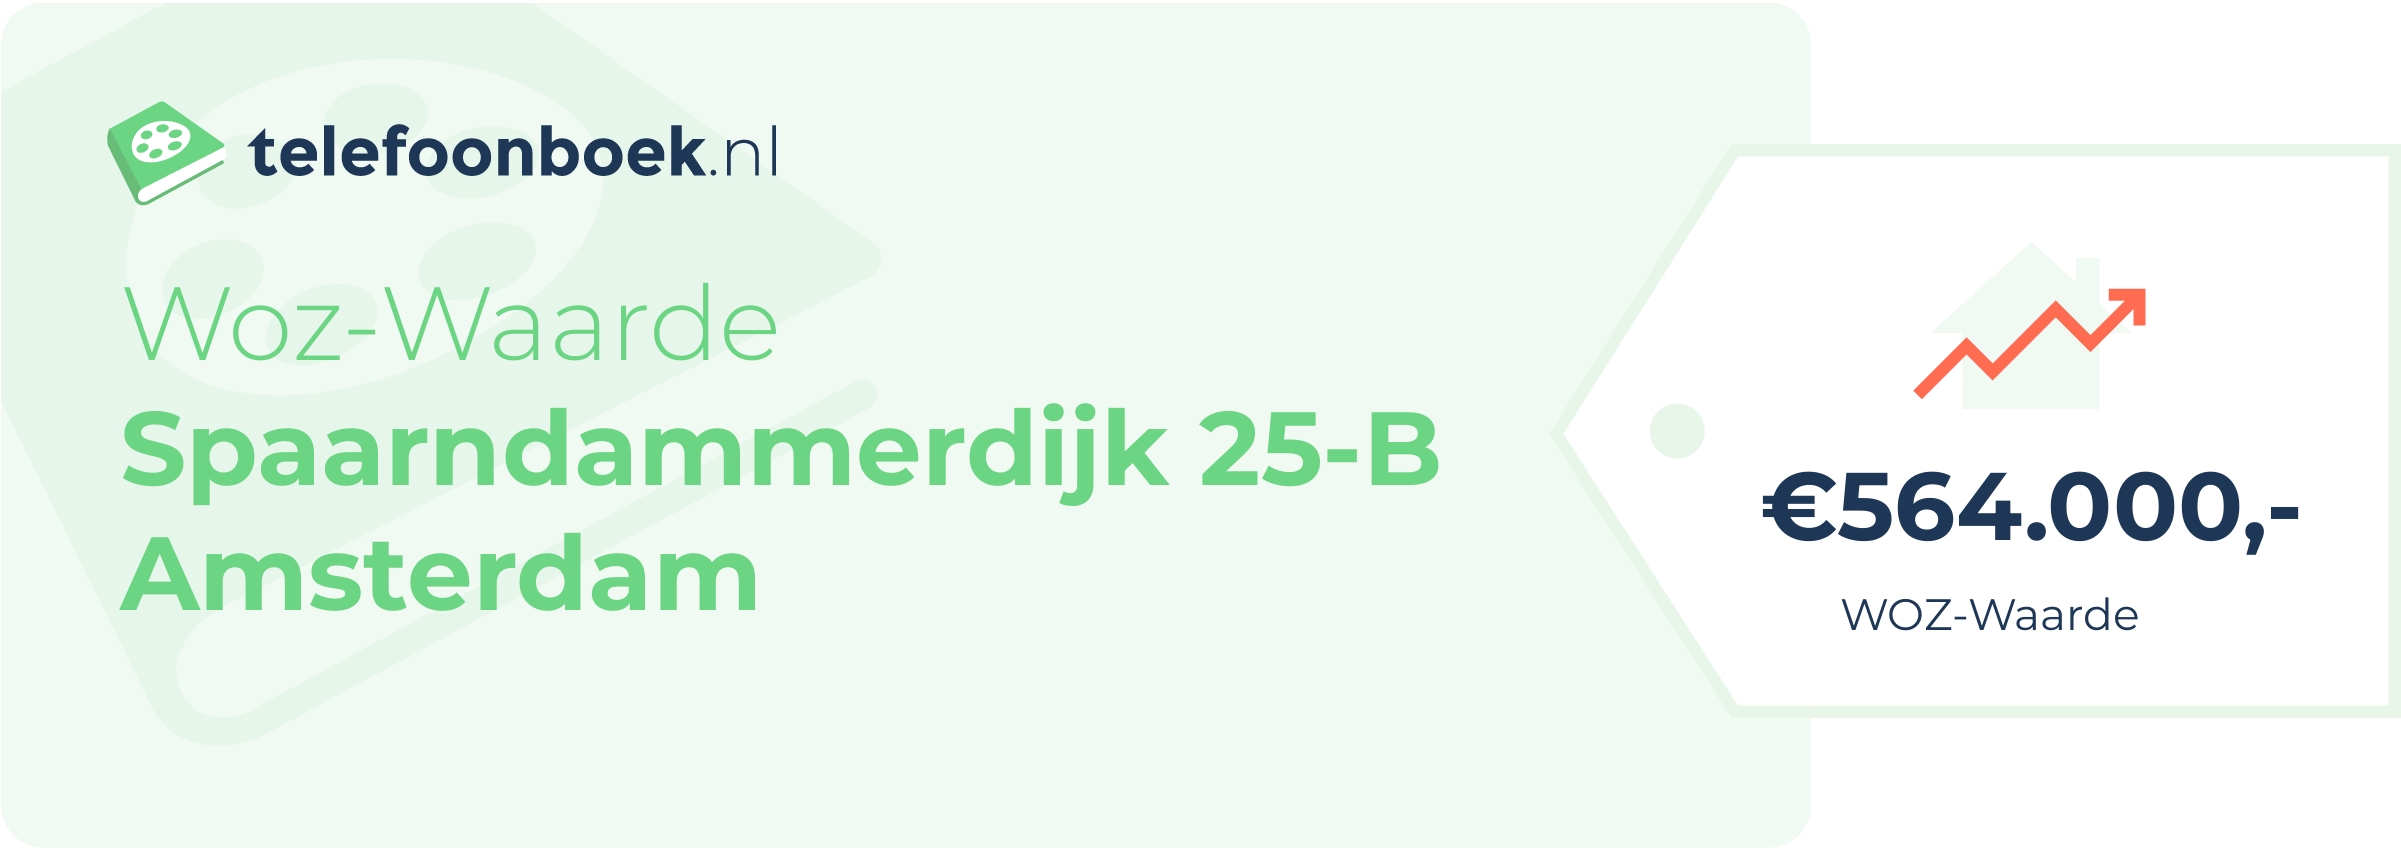 WOZ-waarde Spaarndammerdijk 25-B Amsterdam